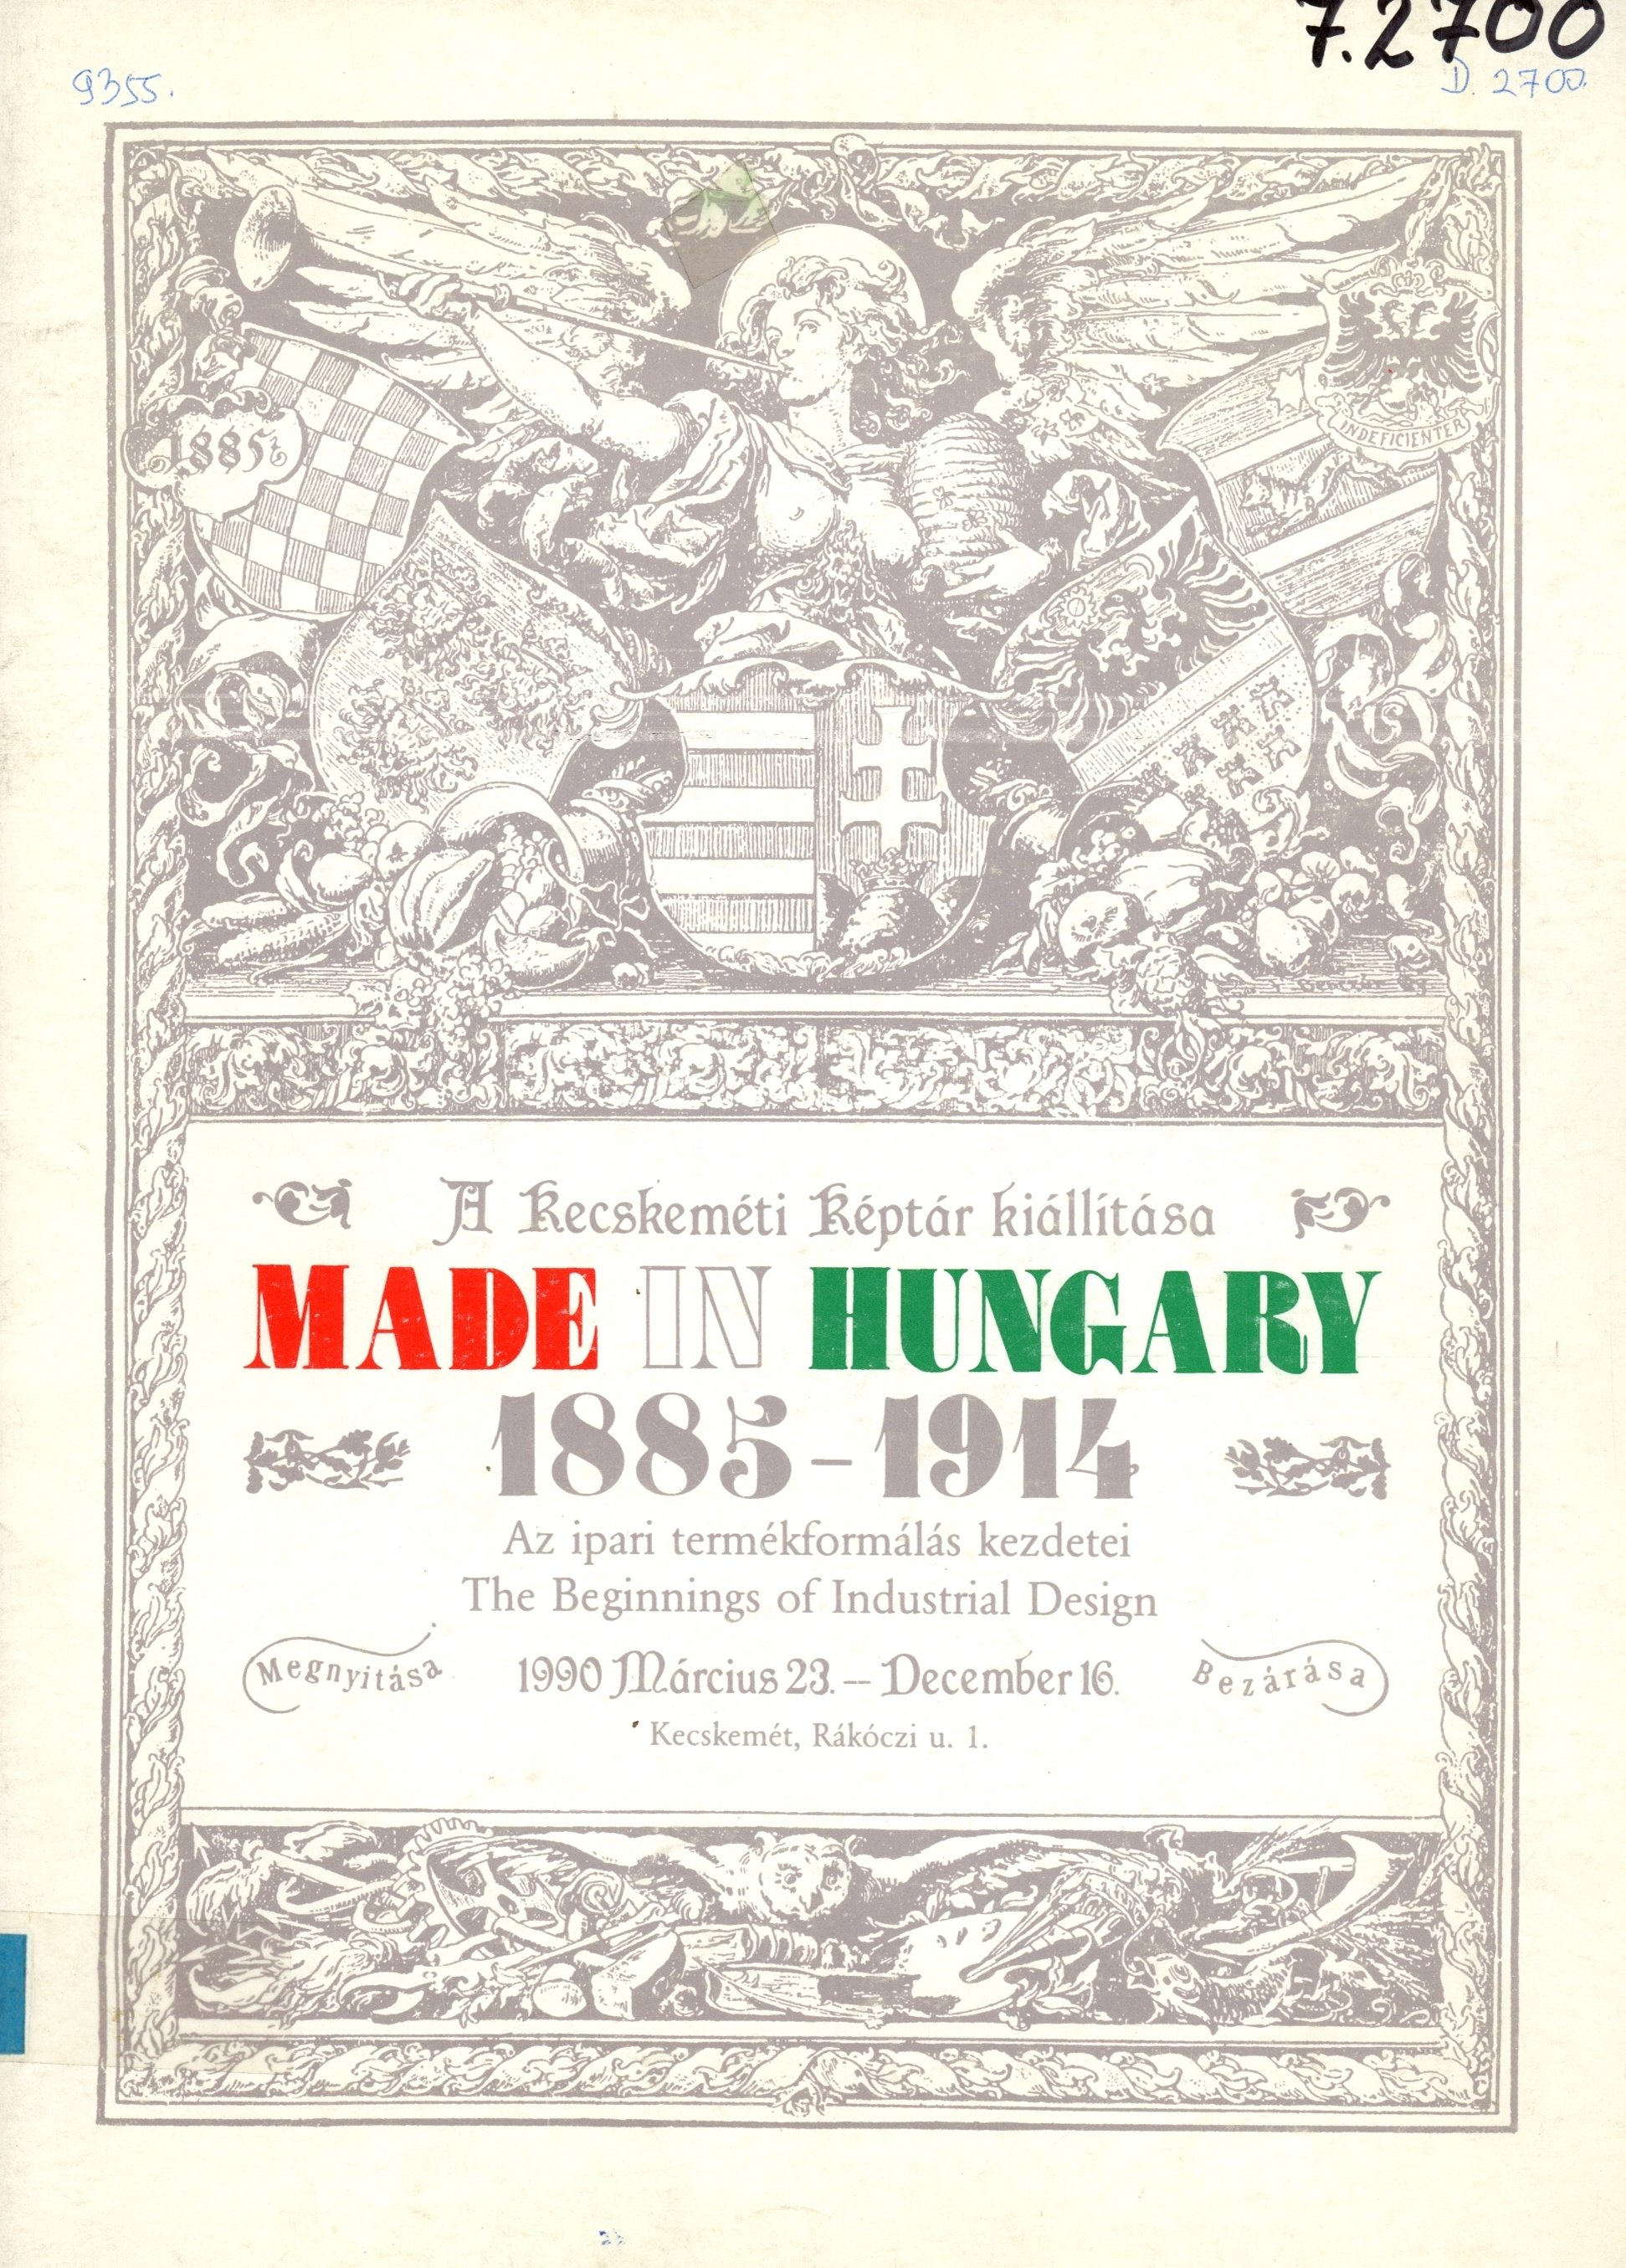 Made in Hungary 1885 - 1914 (Erkel Ferenc Múzeum és Könyvtár, Gyula CC BY-NC-SA)